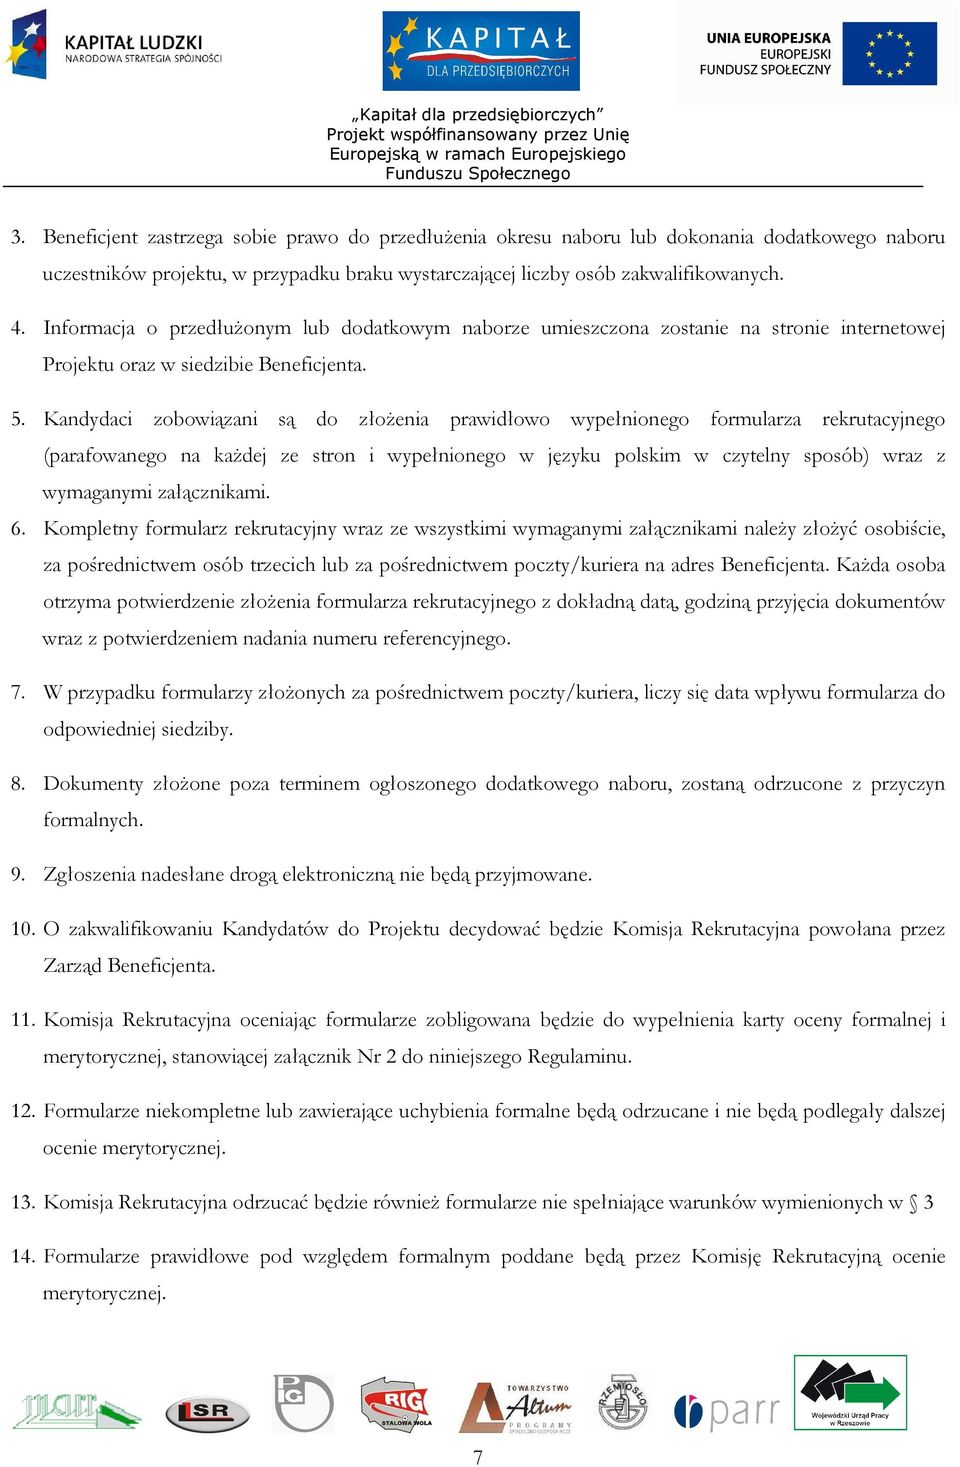 Kandydaci zobowiązani są do złoŝenia prawidłowo wypełnionego formularza rekrutacyjnego (parafowanego na kaŝdej ze stron i wypełnionego w języku polskim w czytelny sposób) wraz z wymaganymi